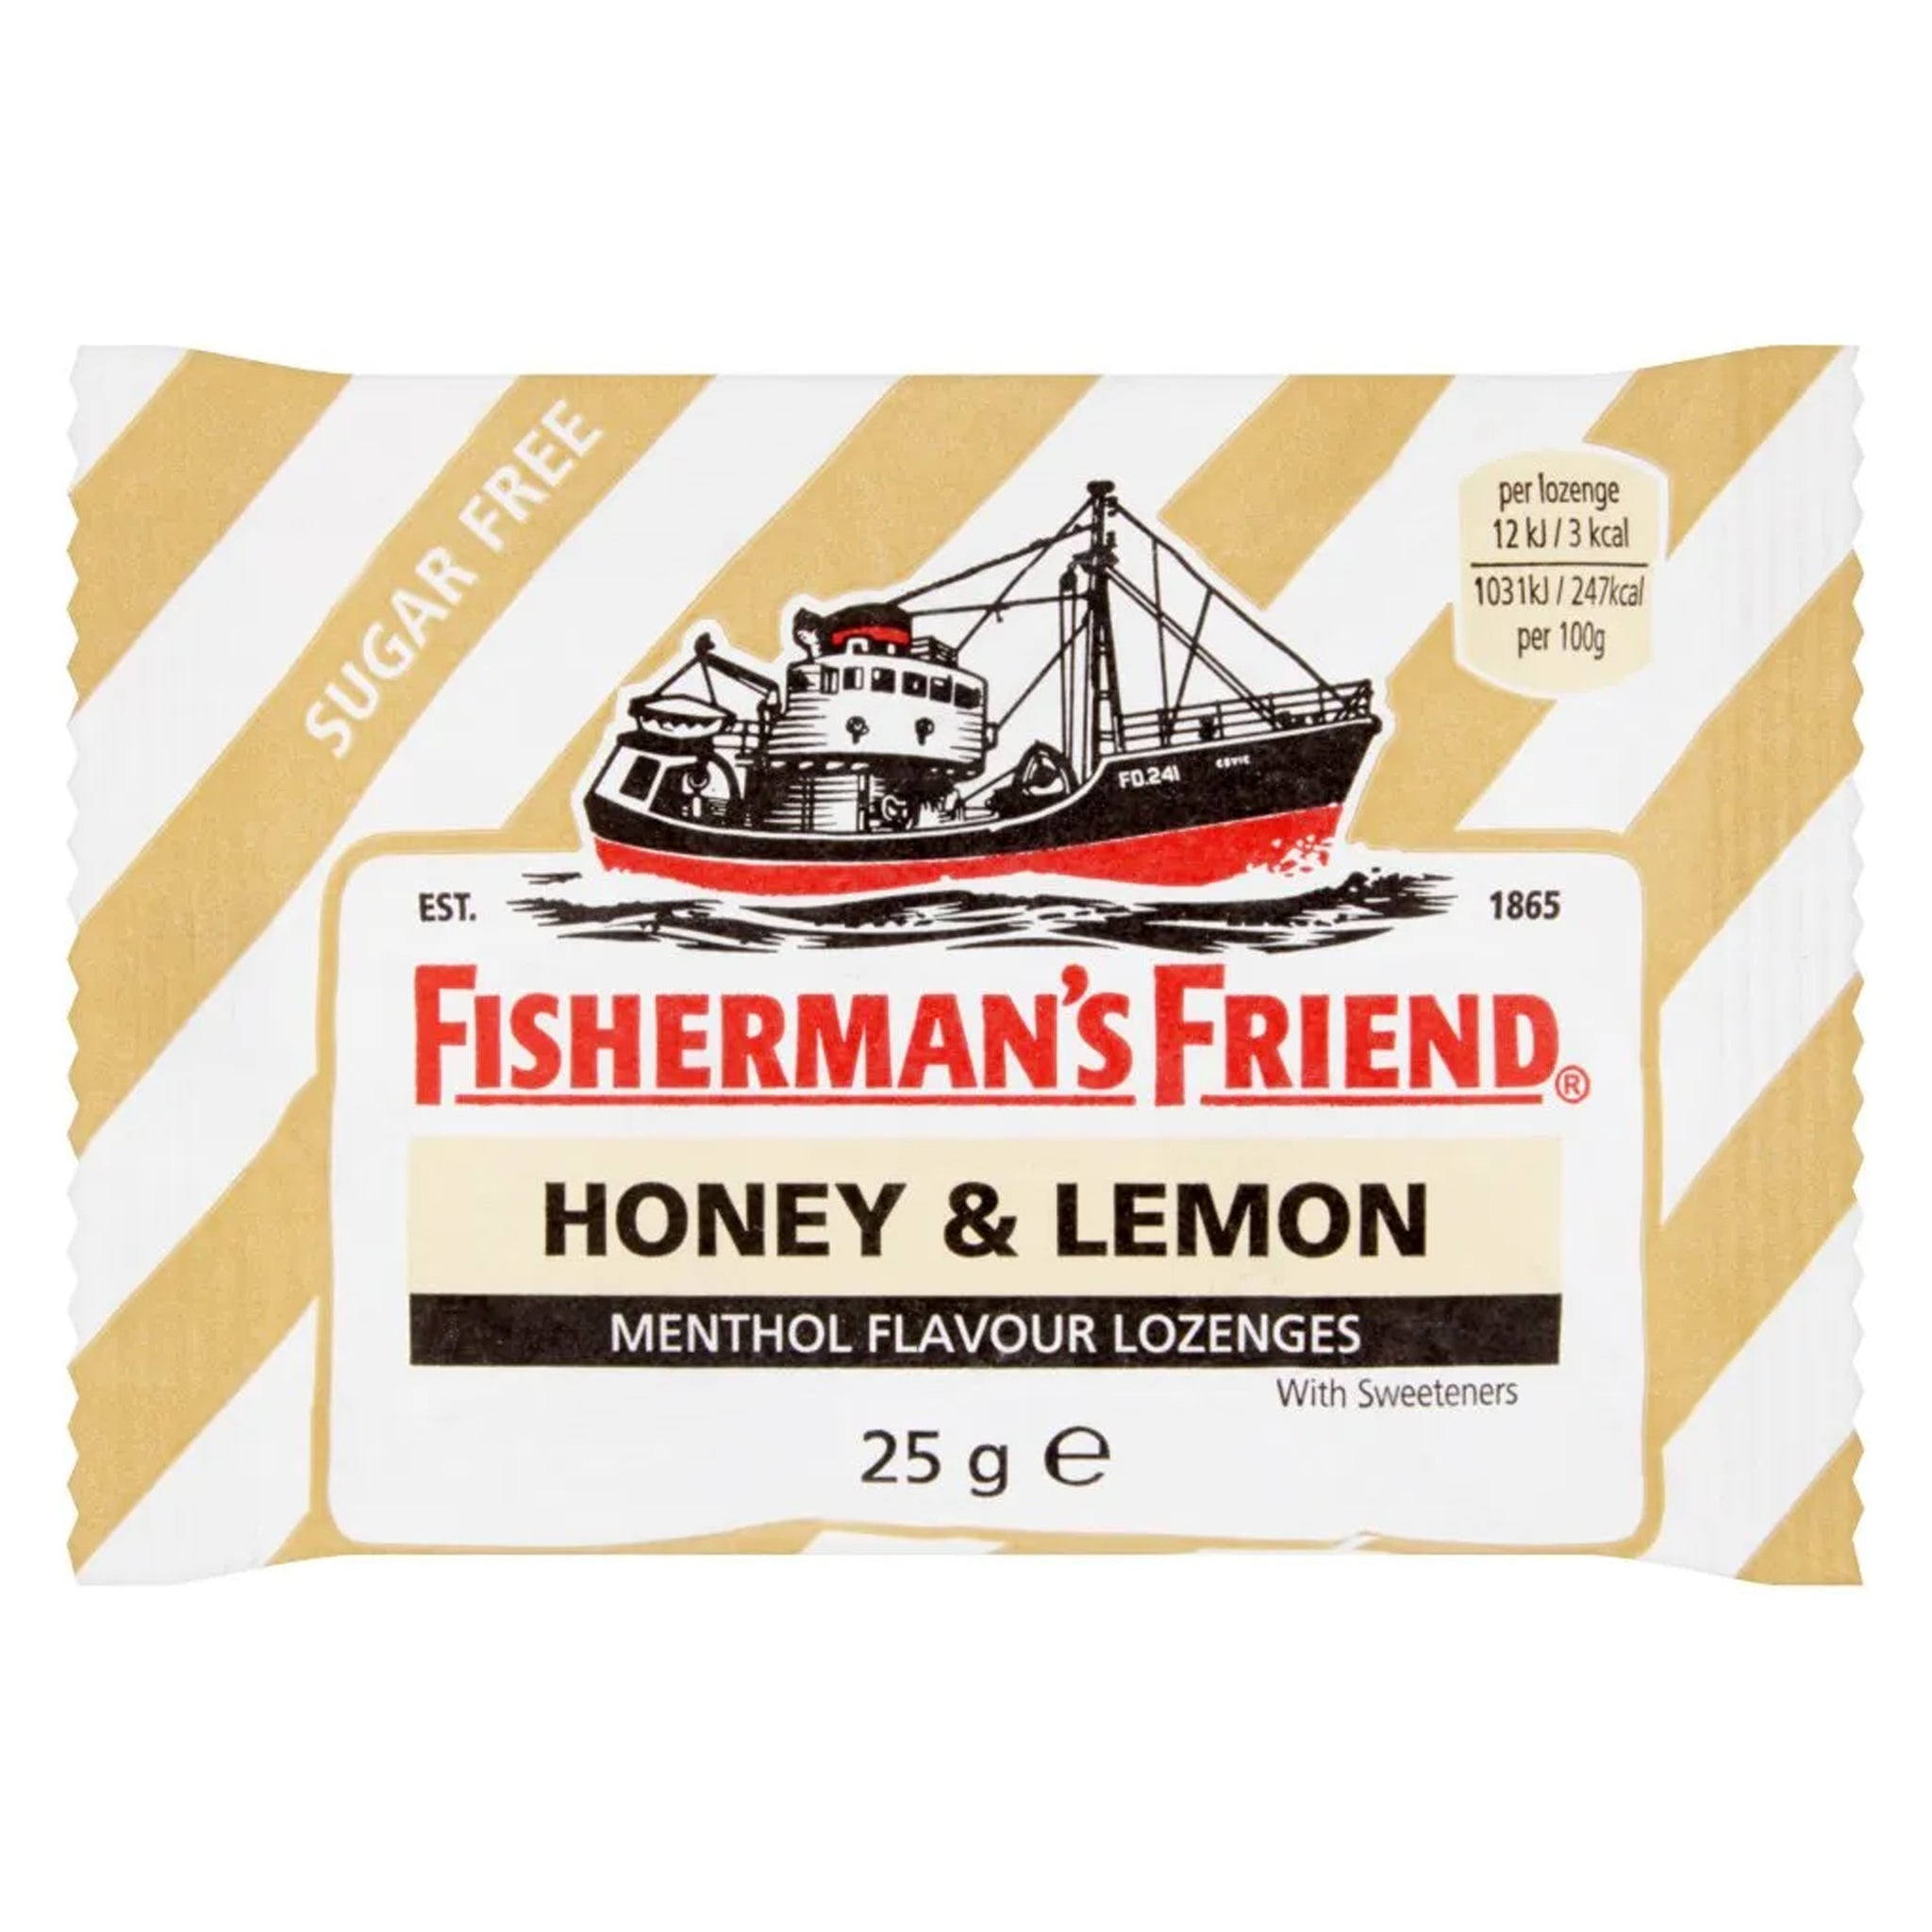 FisherMan's Friends Honey & Lemon פישר מן סוכריות מנטה דבש ולימון